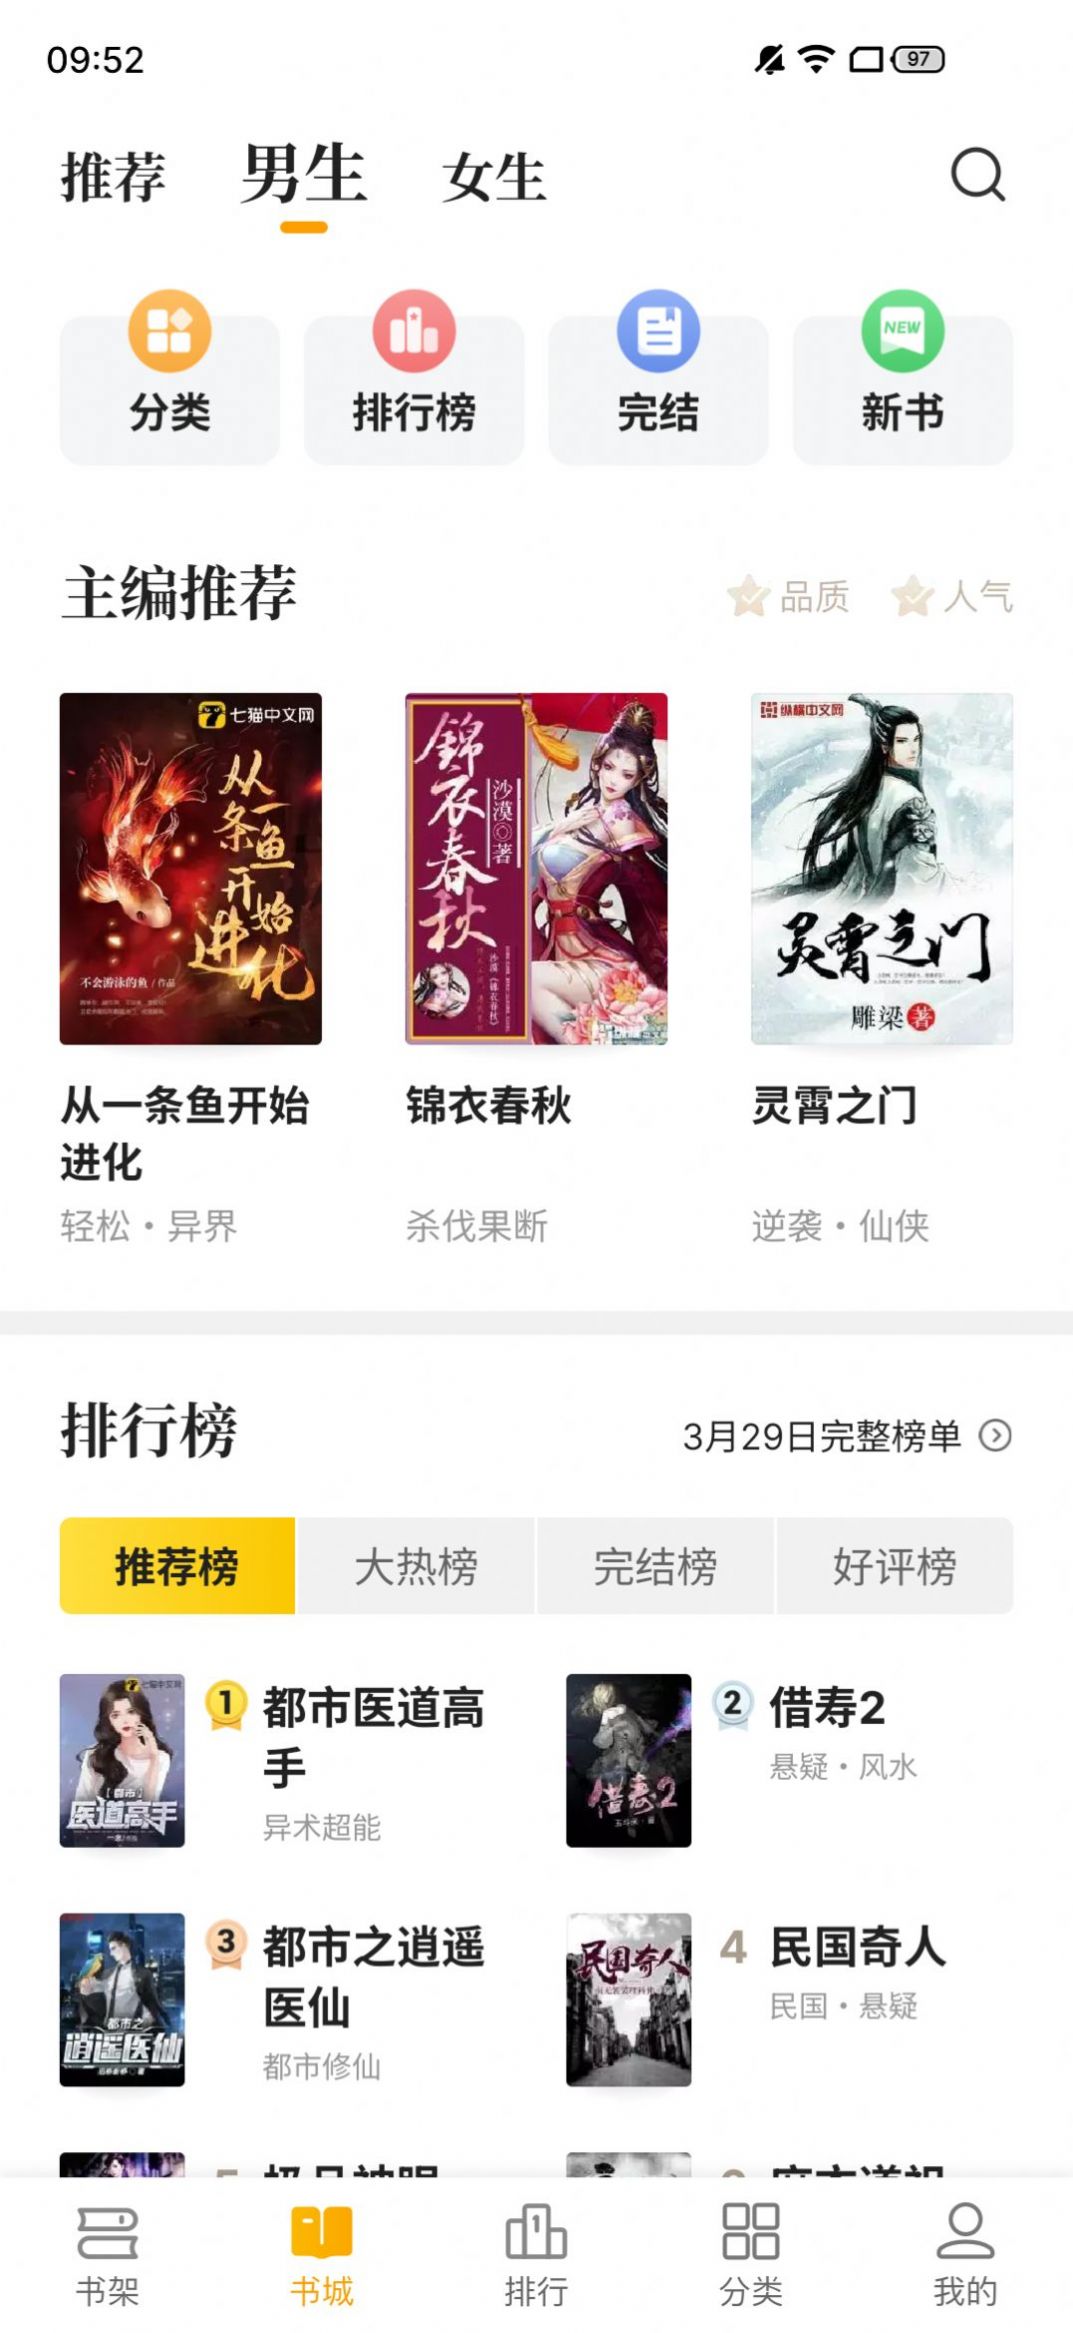 熊猫免费小说APP下载,熊猫免费小说APP官方版 v2.1.20